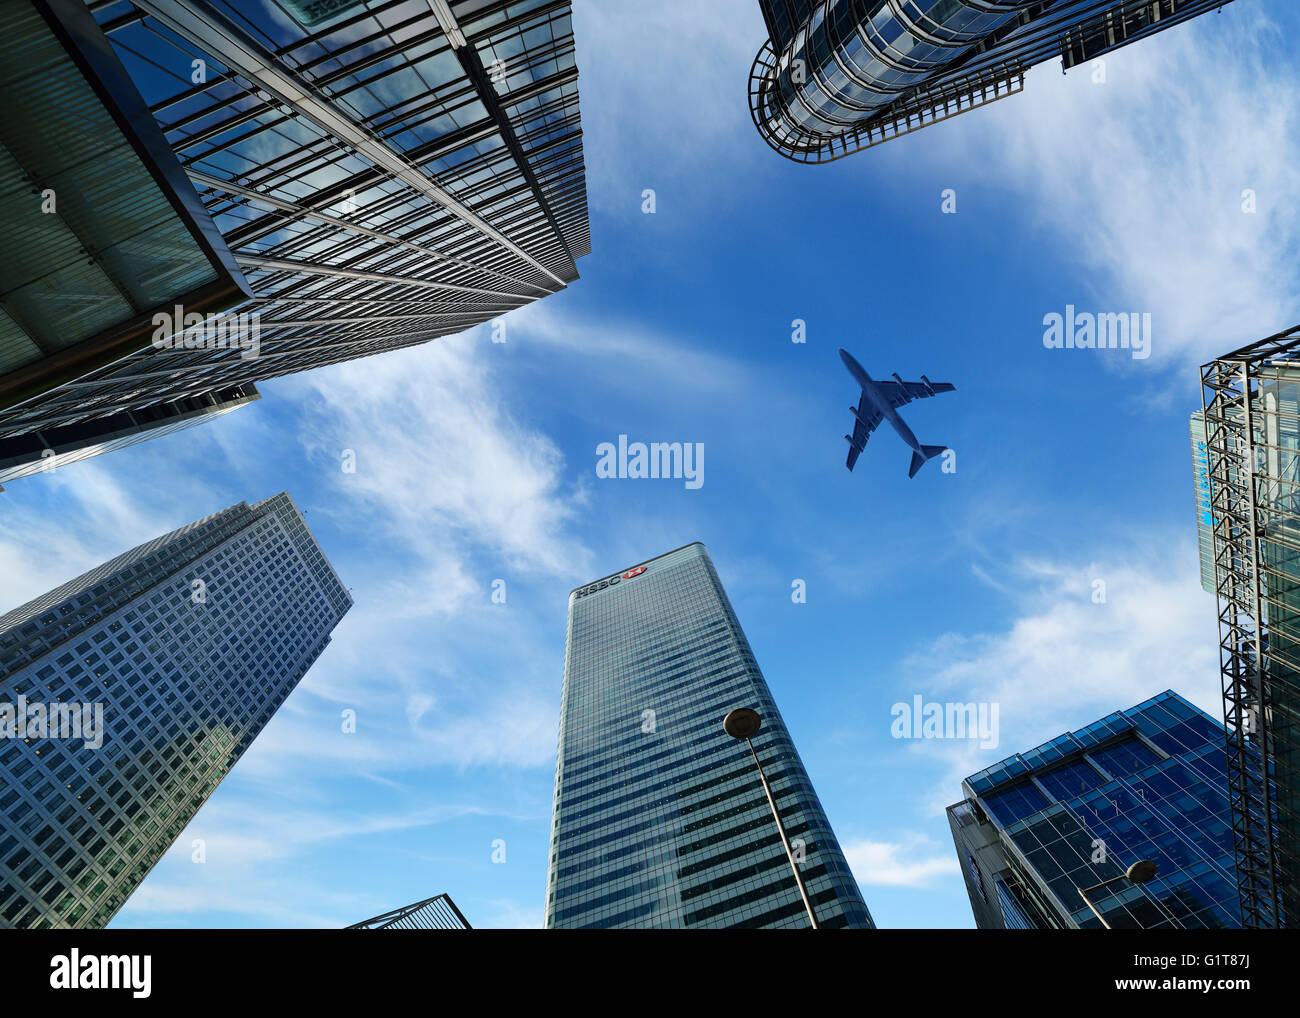 Vol d'un avion sur Canary Wharf, London, England, UK Banque D'Images